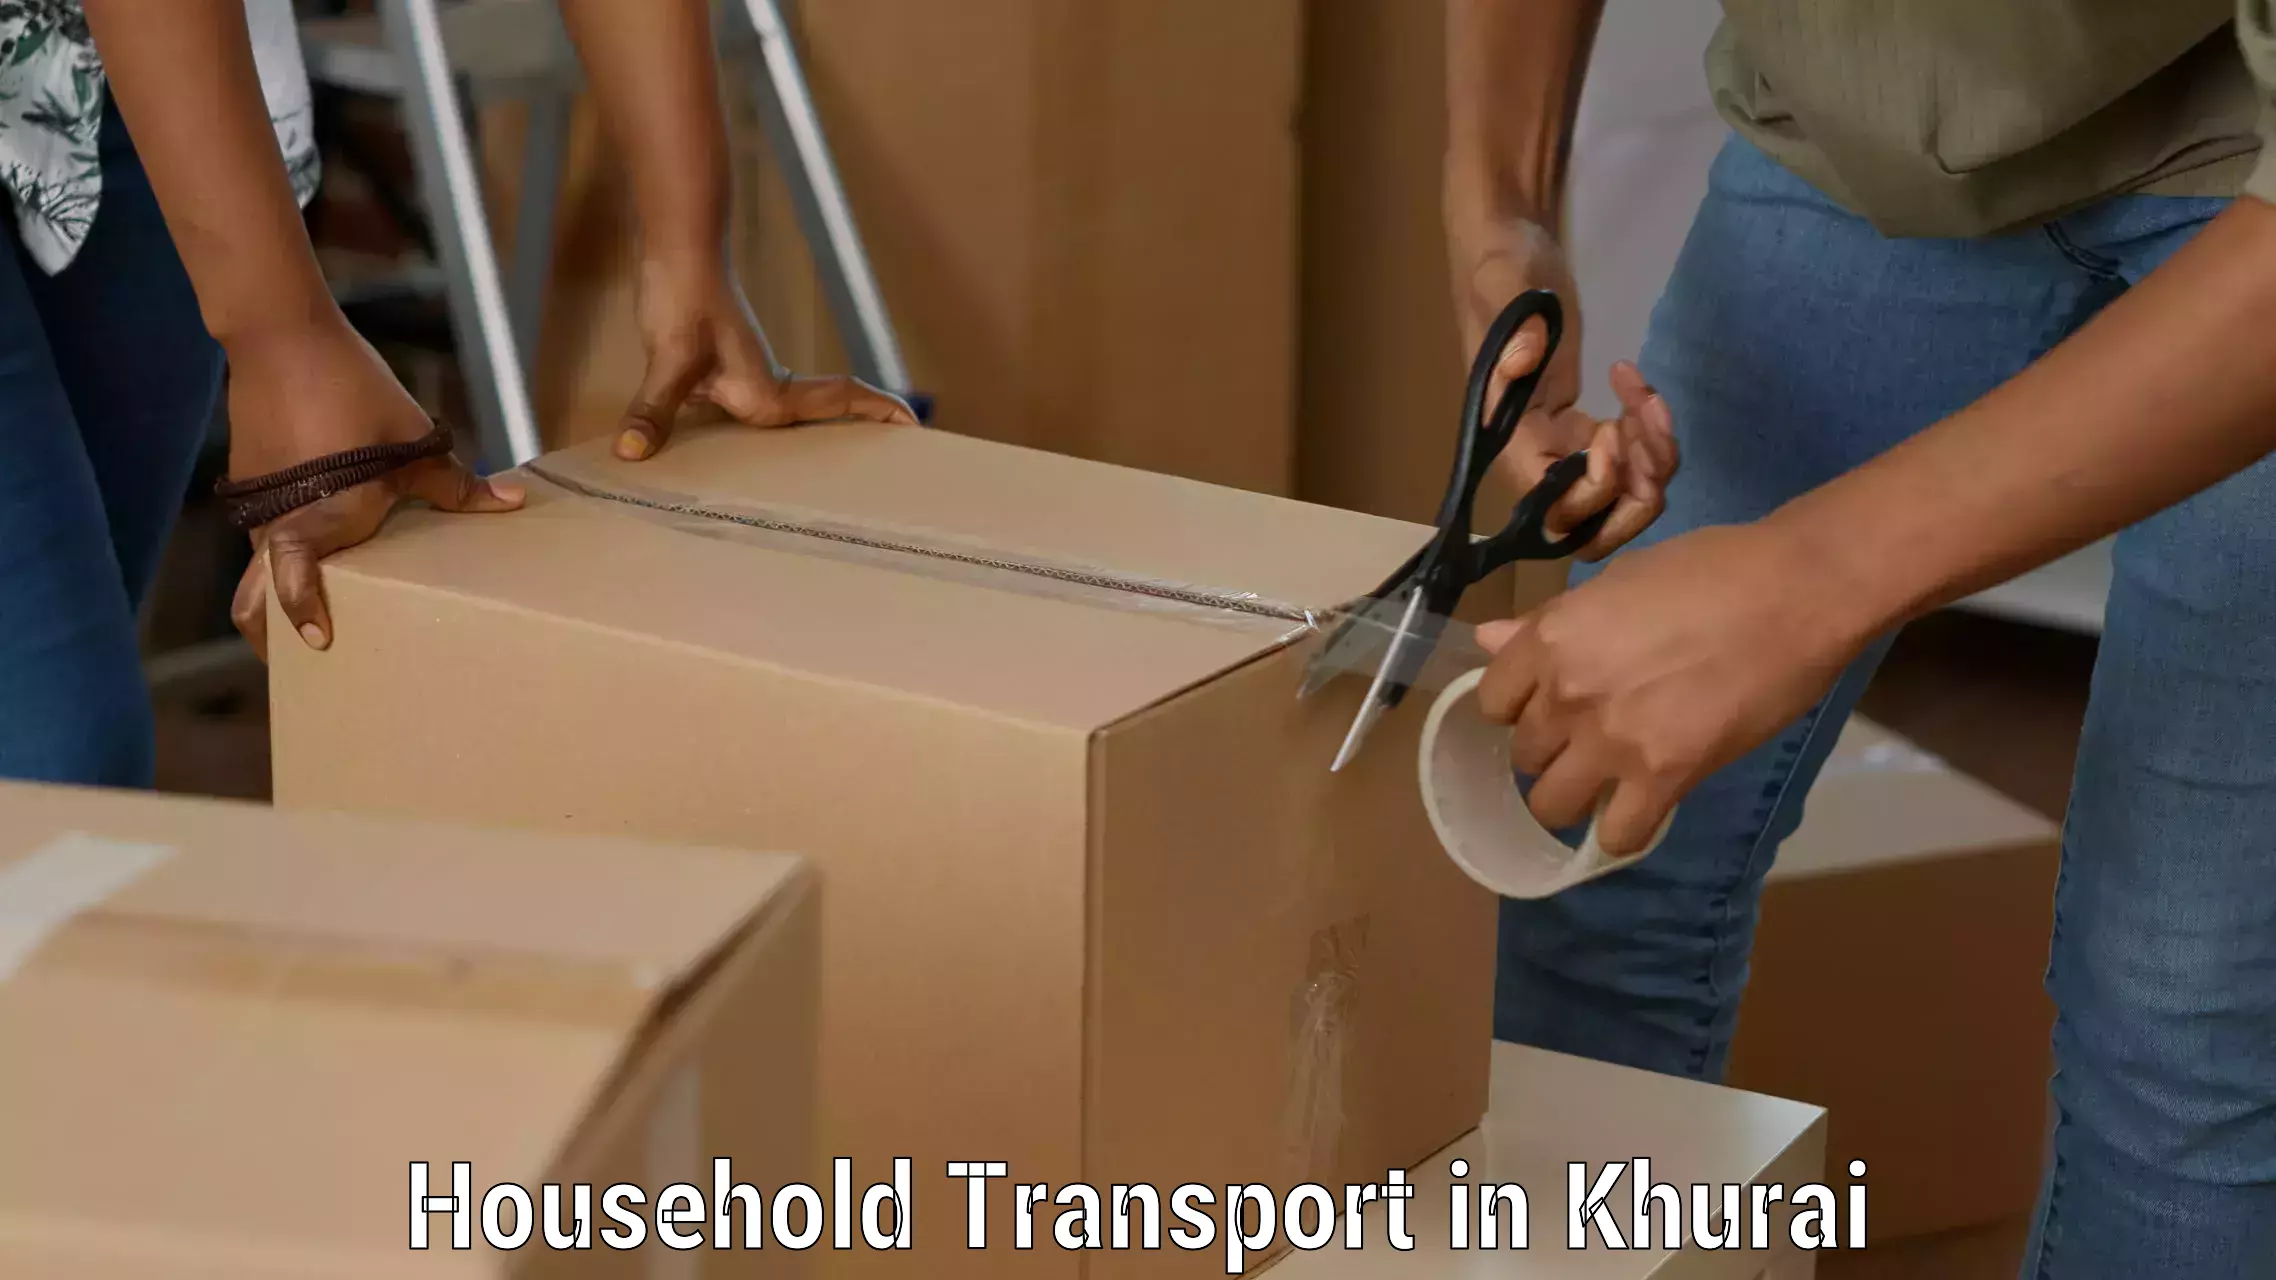 Door-to-door relocation services in Khurai